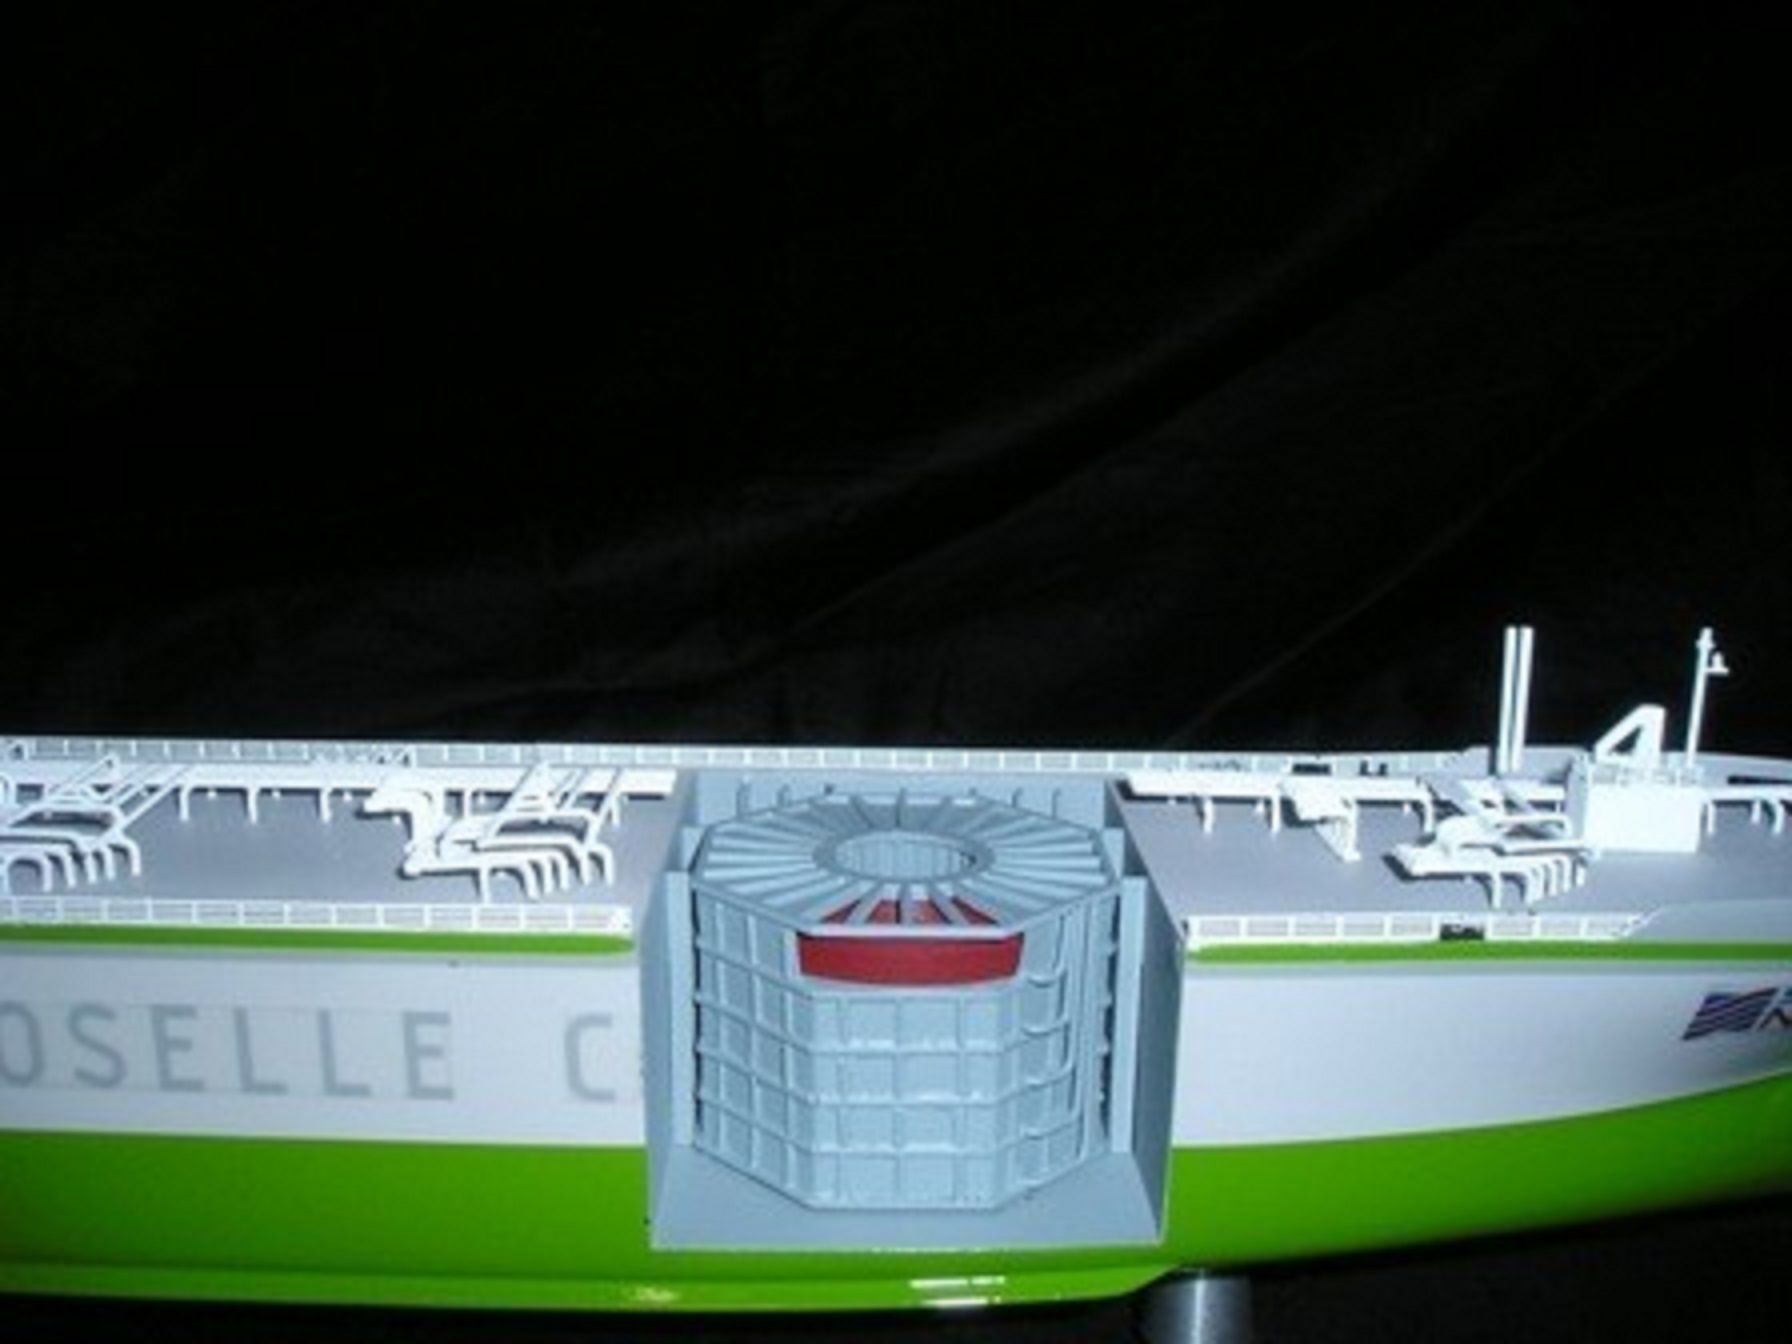 Maquette bateau - Coque ouverte du GNC (Gaz Naturel Comprimé) en vitrine